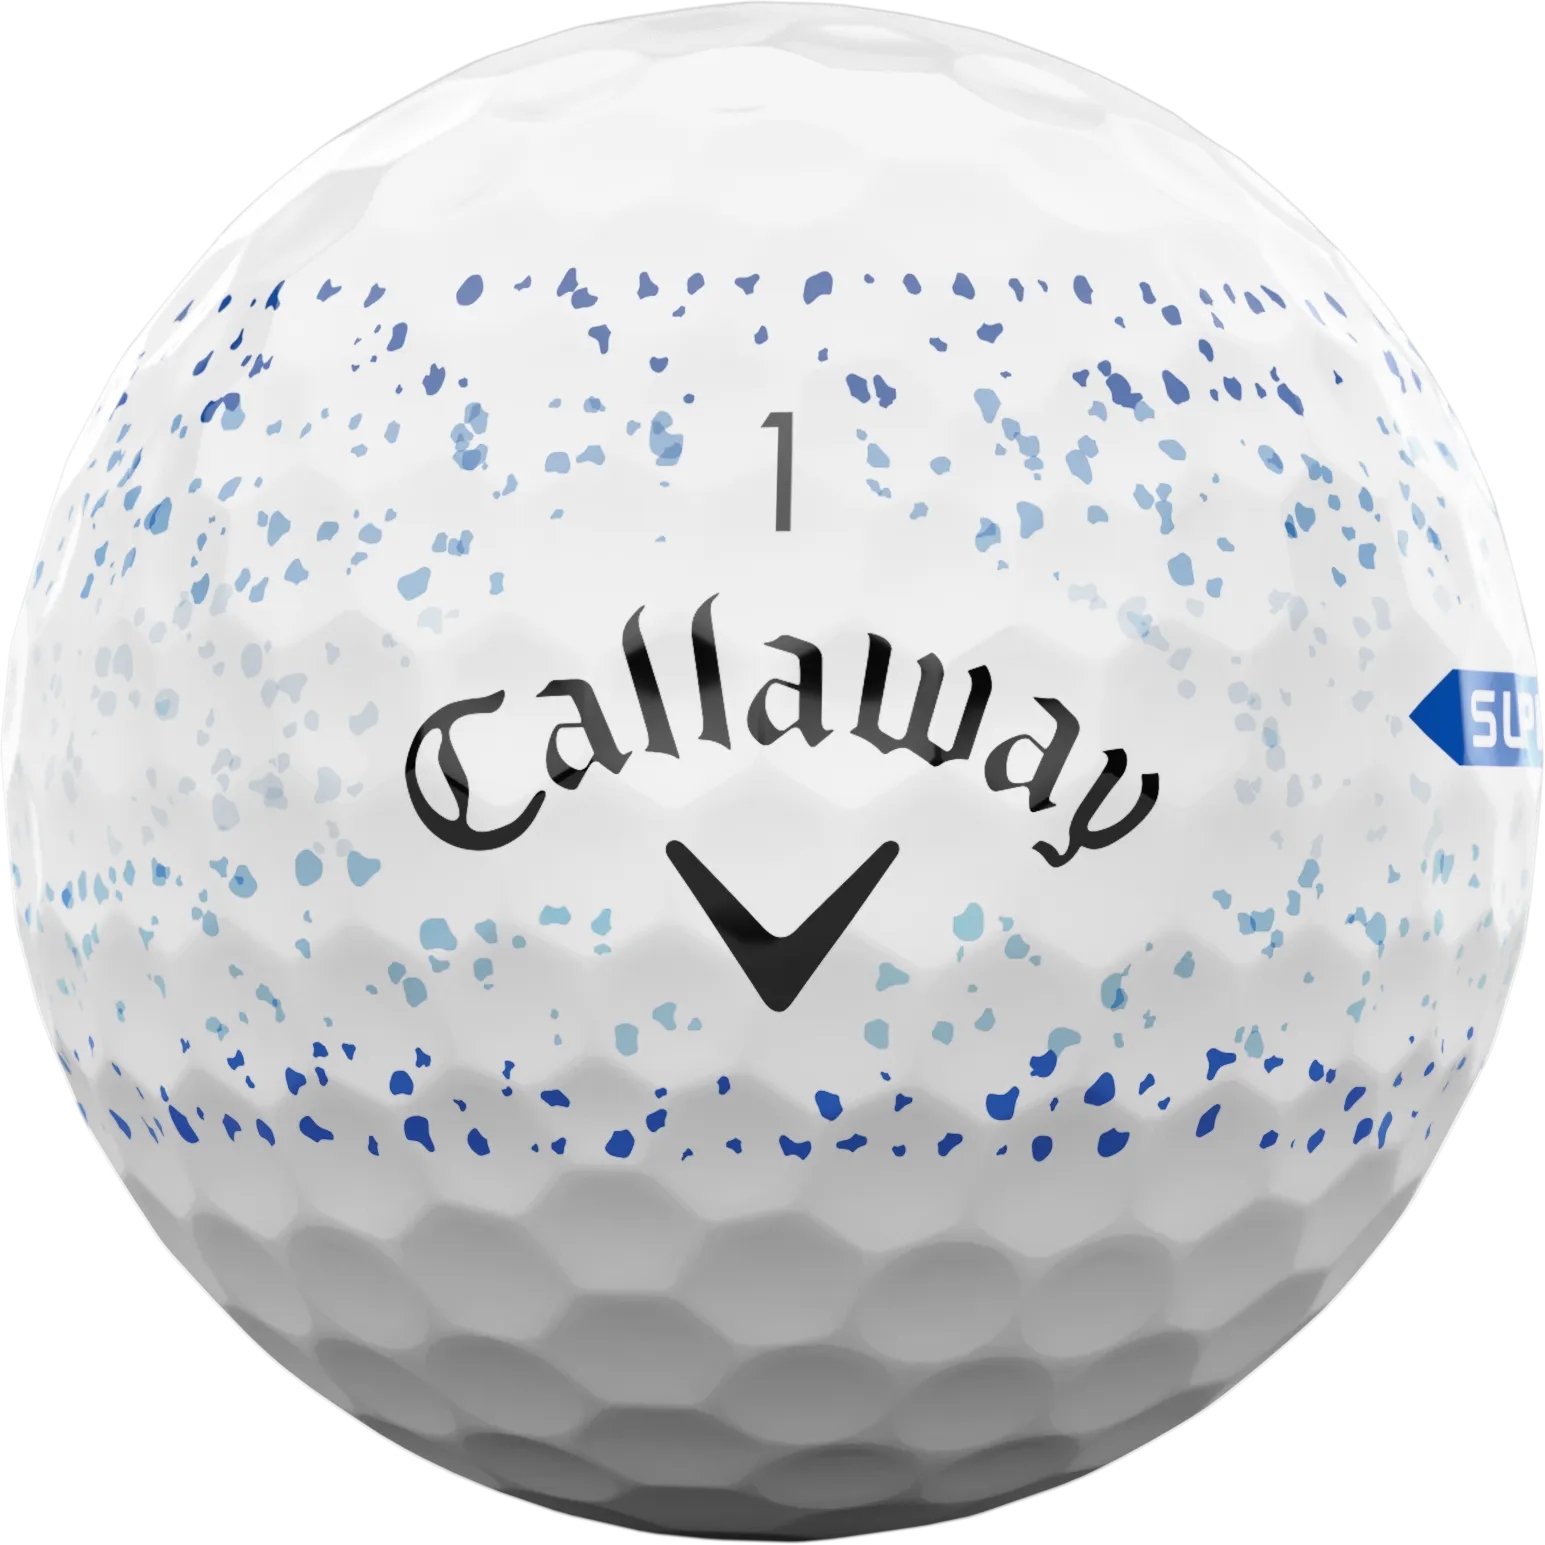 Callaway Supersoft Splatter 360 Golfbälle, weiß/blau